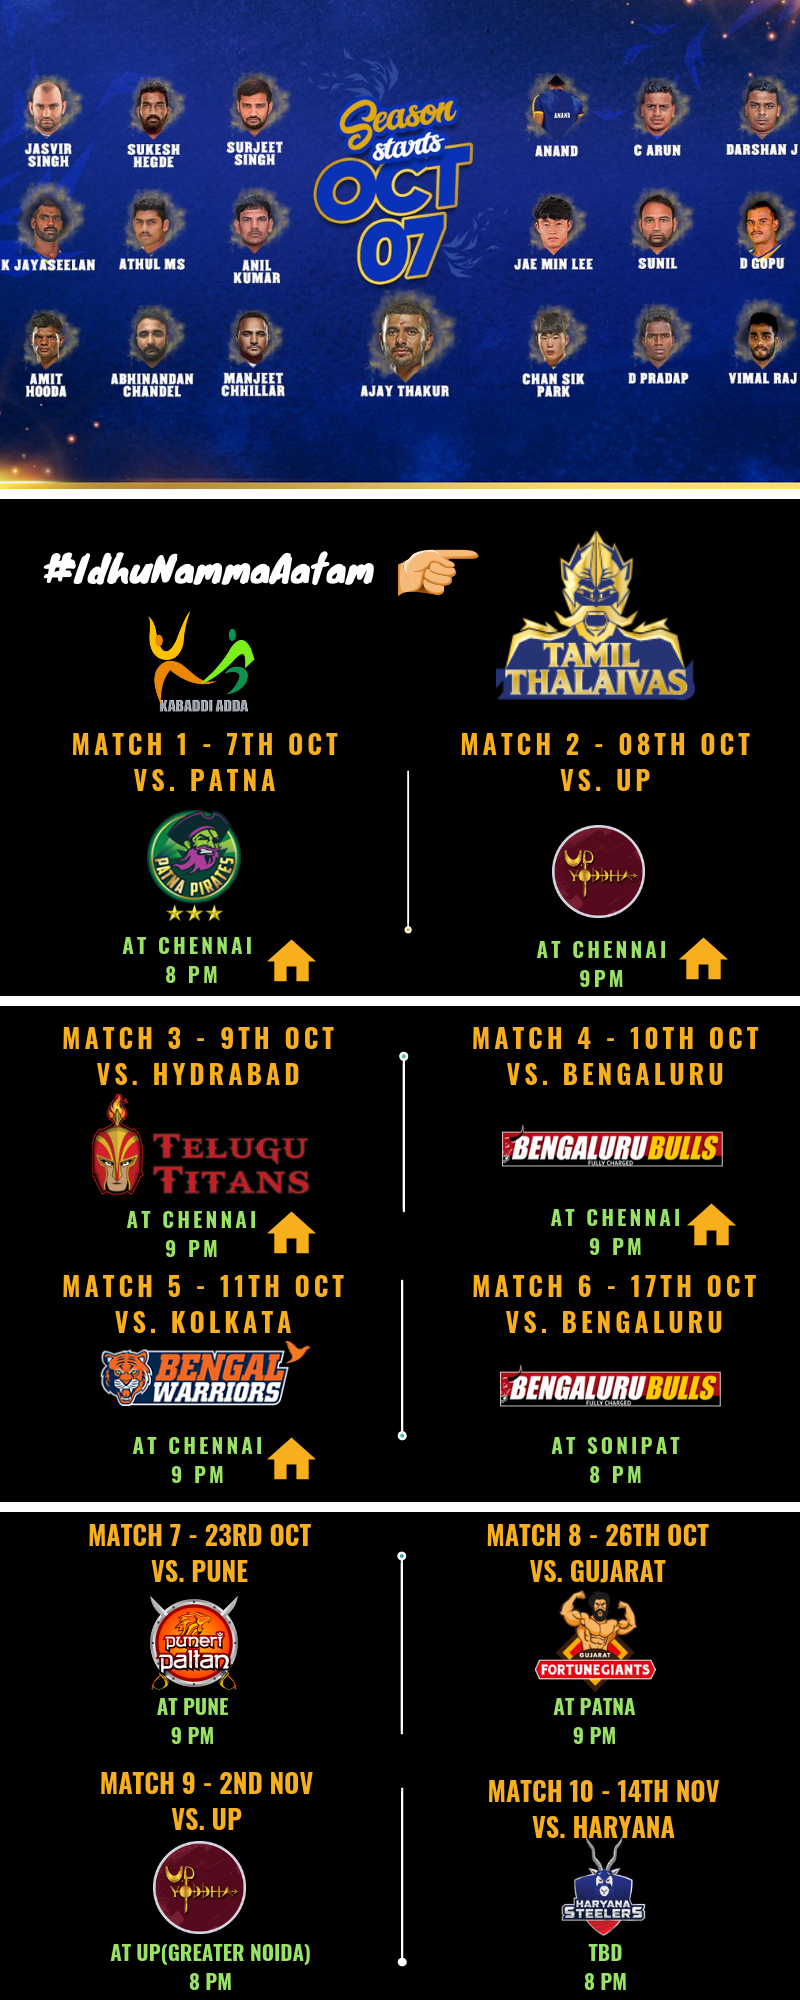 Tamil Thalaivas Matches, Schedule